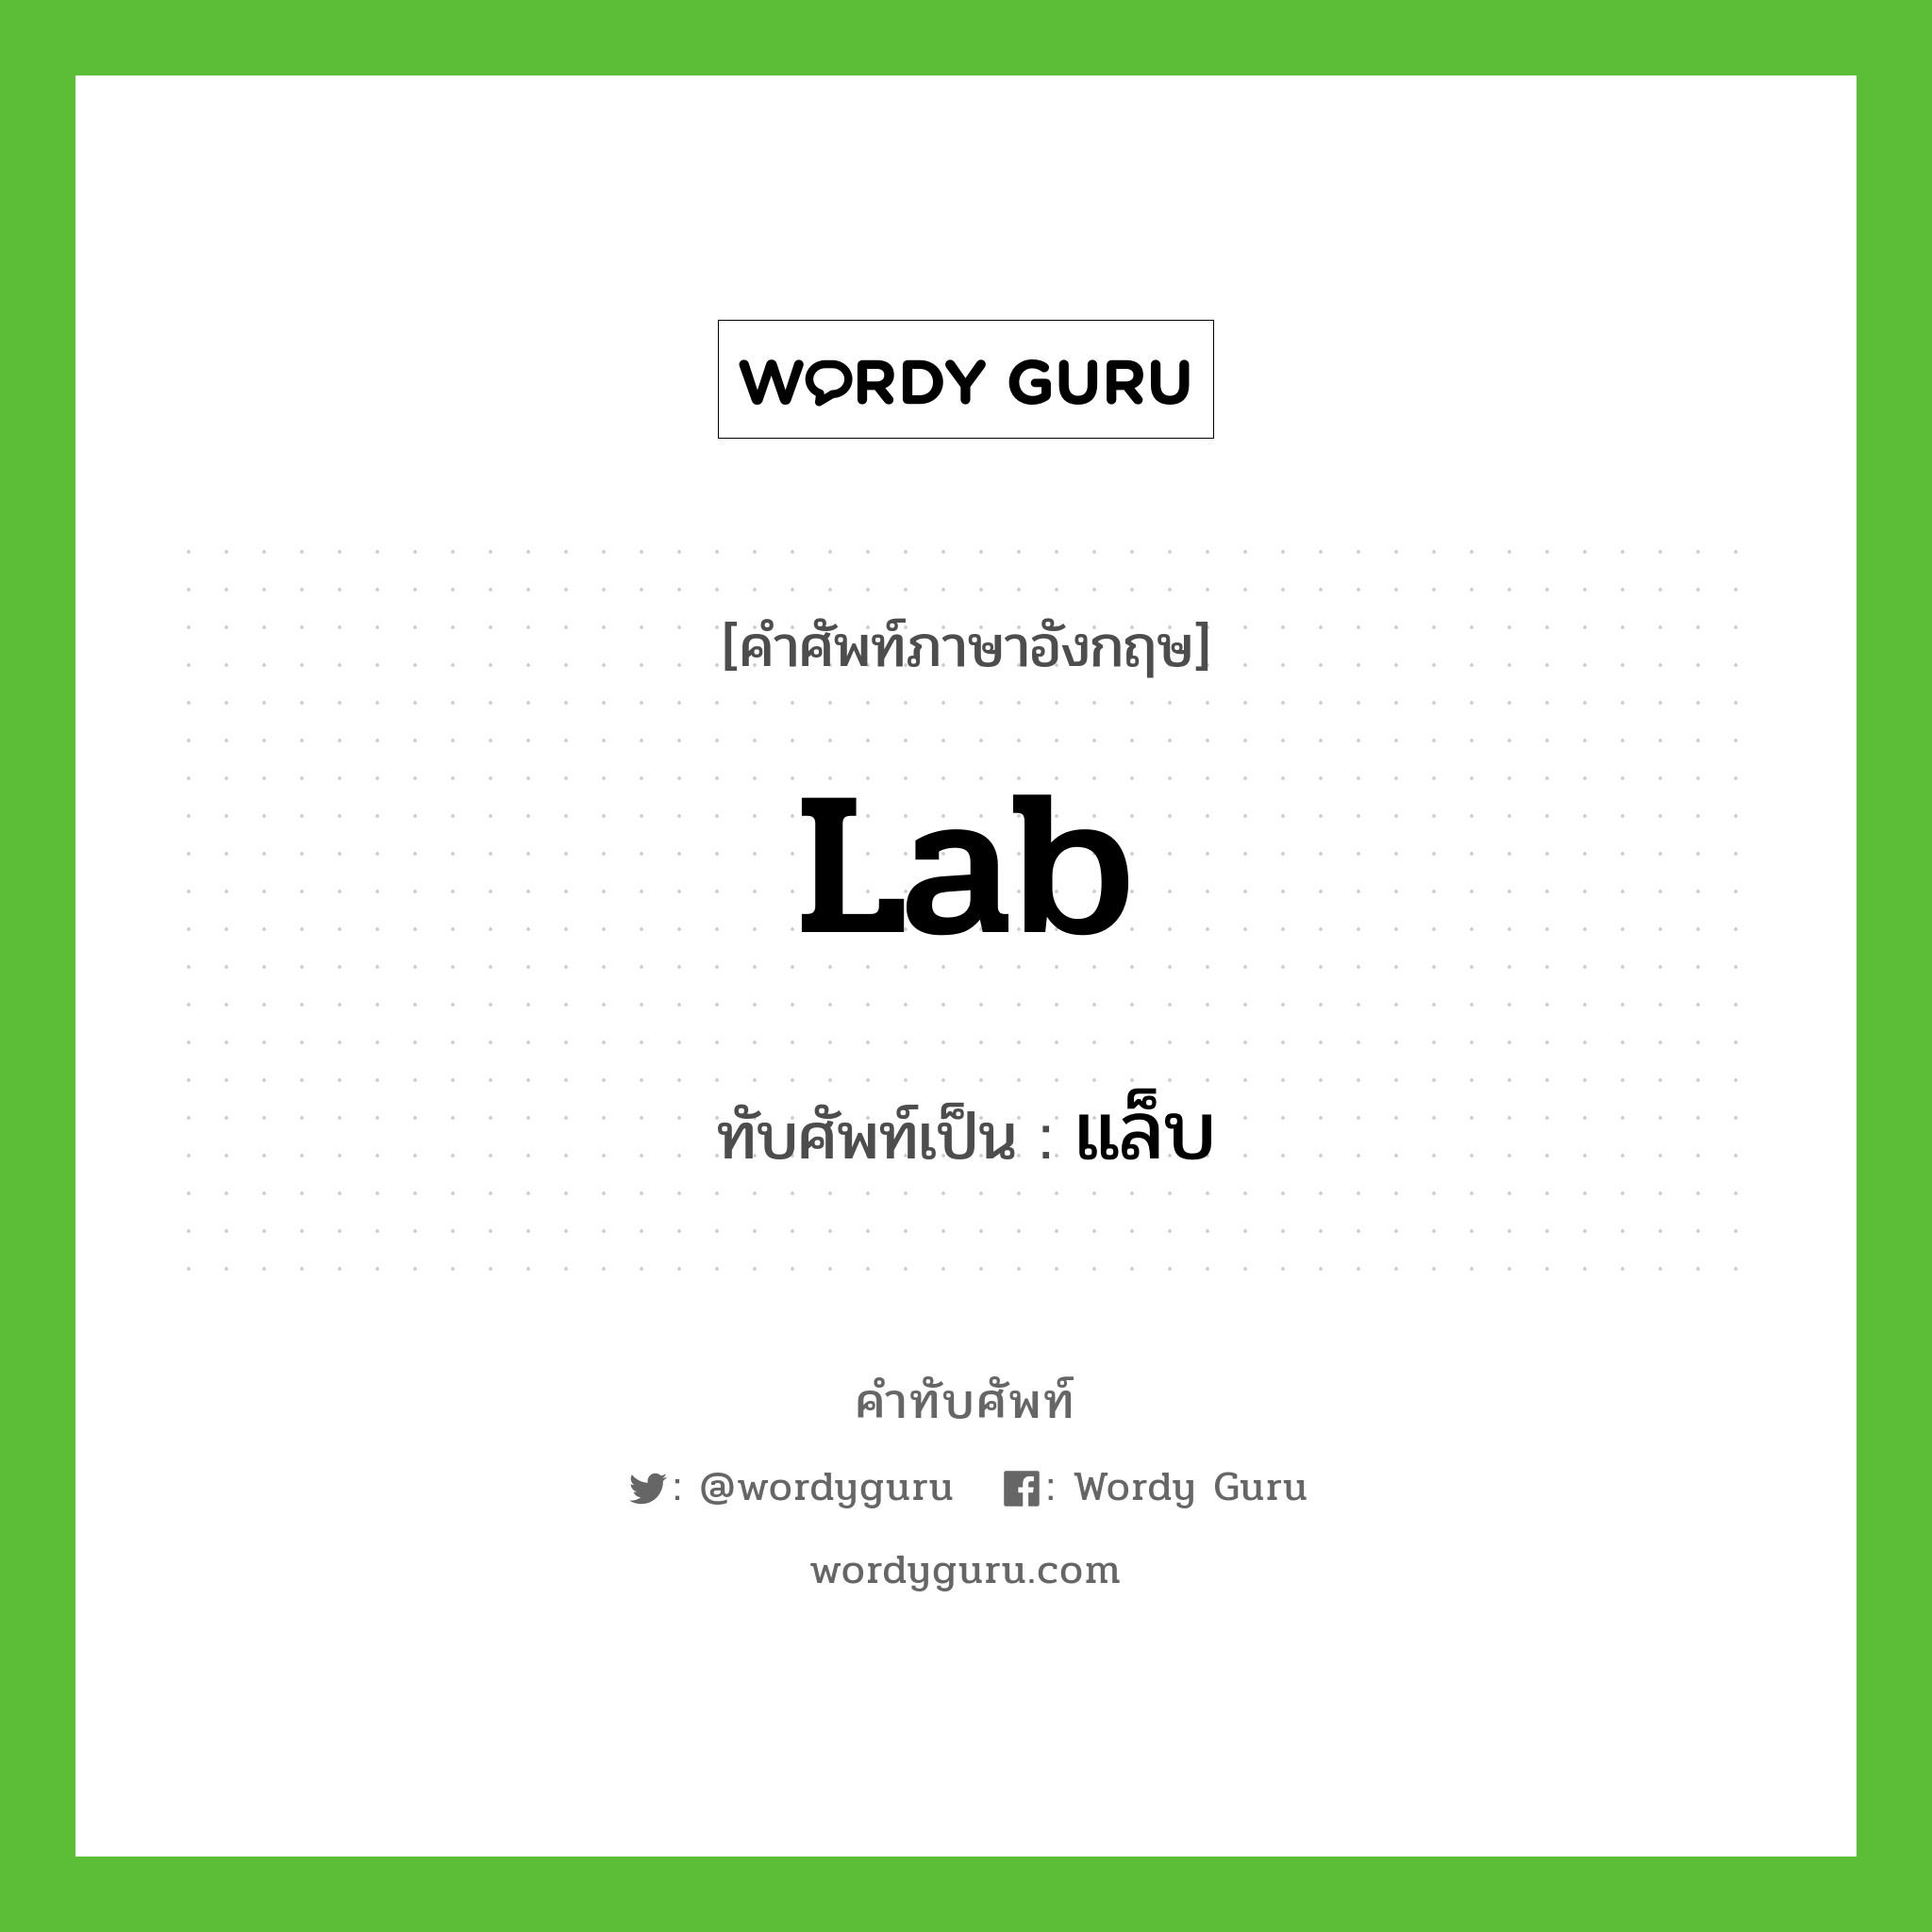 lab เขียนเป็นคำไทยว่าอะไร?, คำศัพท์ภาษาอังกฤษ lab ทับศัพท์เป็น แล็บ